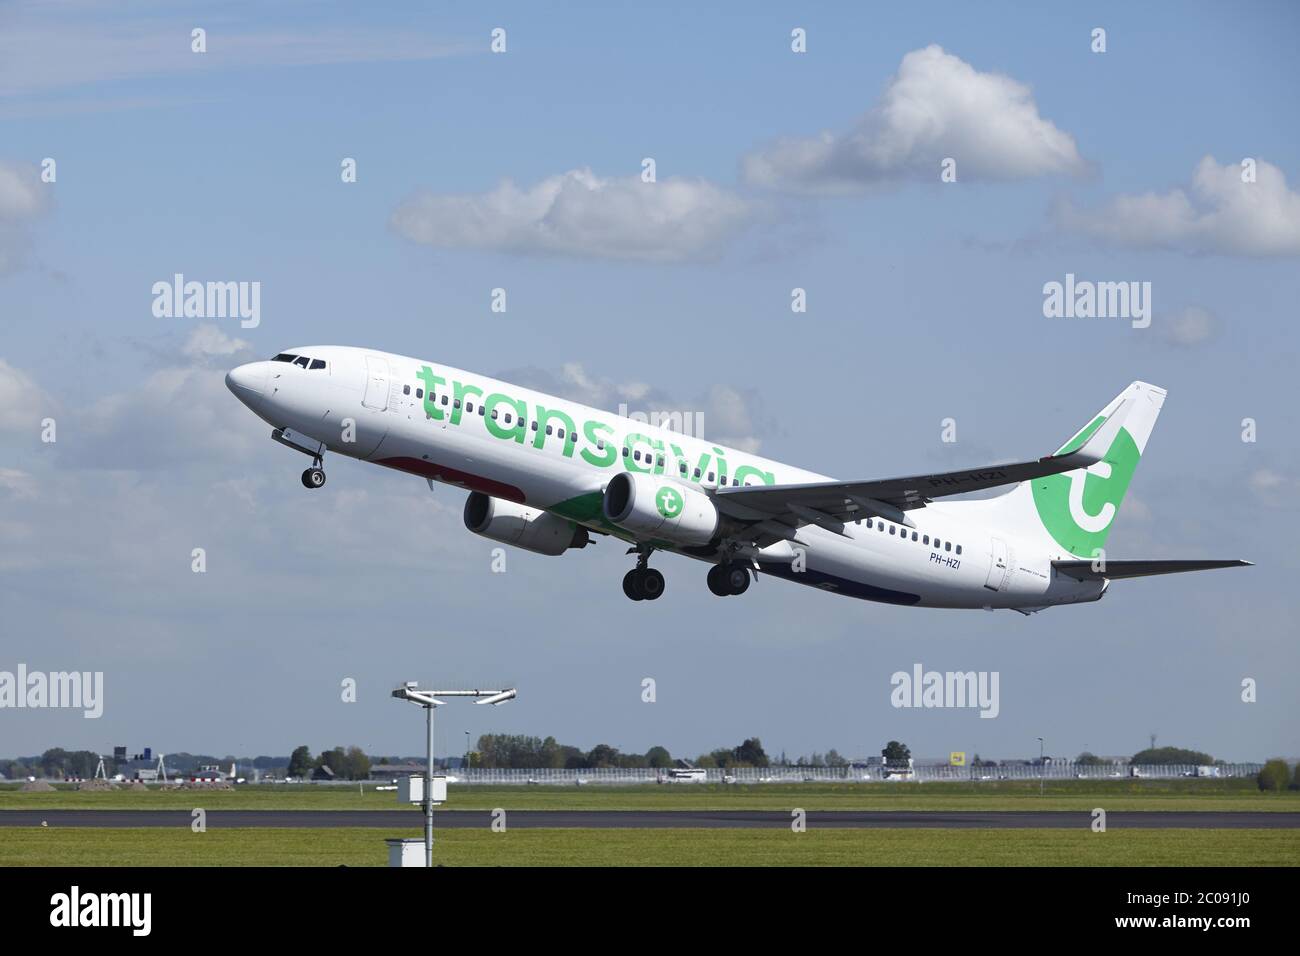 Flughafen Amsterdam Schiphol - Boeing 737 von Transavia takeoff set Stock Photo